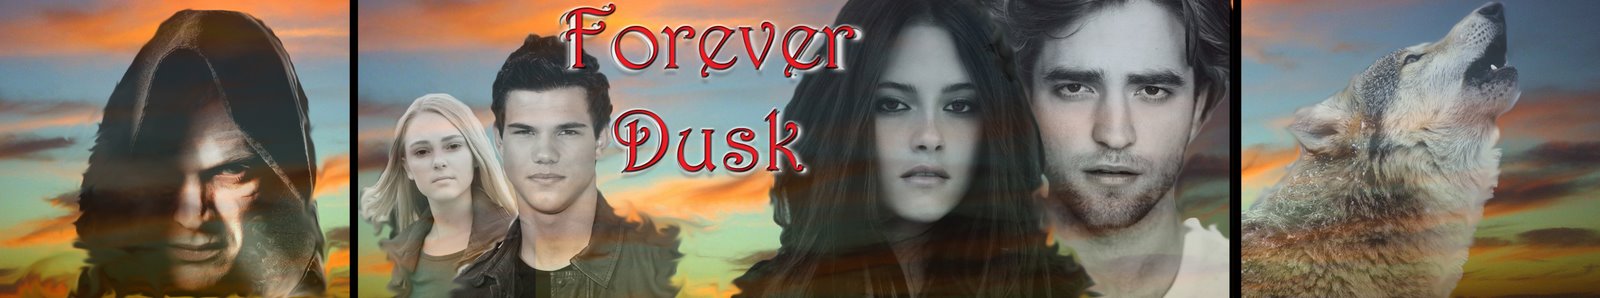 Forever Dusk